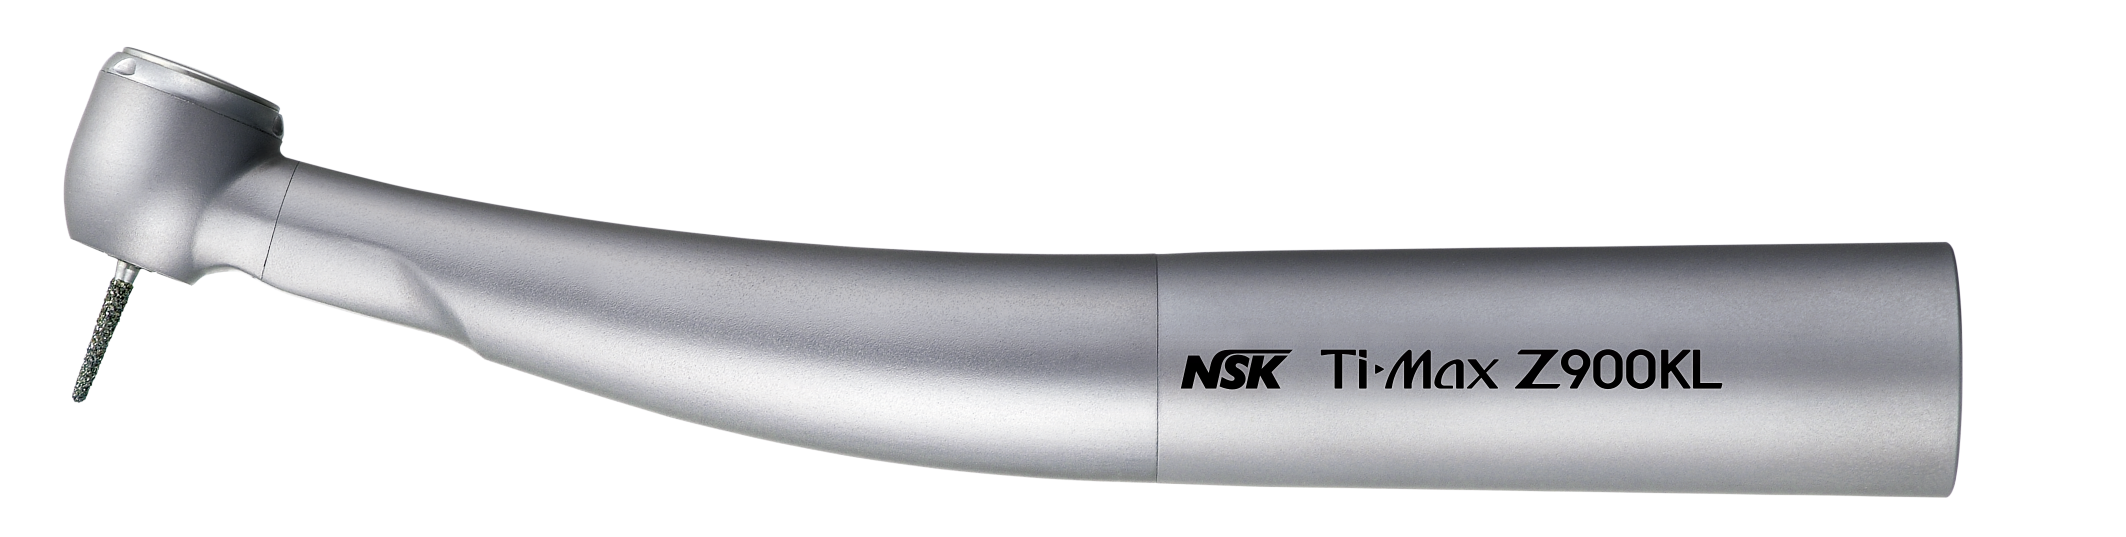 NSK Ti-Max Z900KL, Lichtturbine, 24 Watt, KaVo MULTIflex-Anschluss 4-fach Spray, Druckknopfspannzange, Keramik-Kugellager, Microfilter, kratzfest